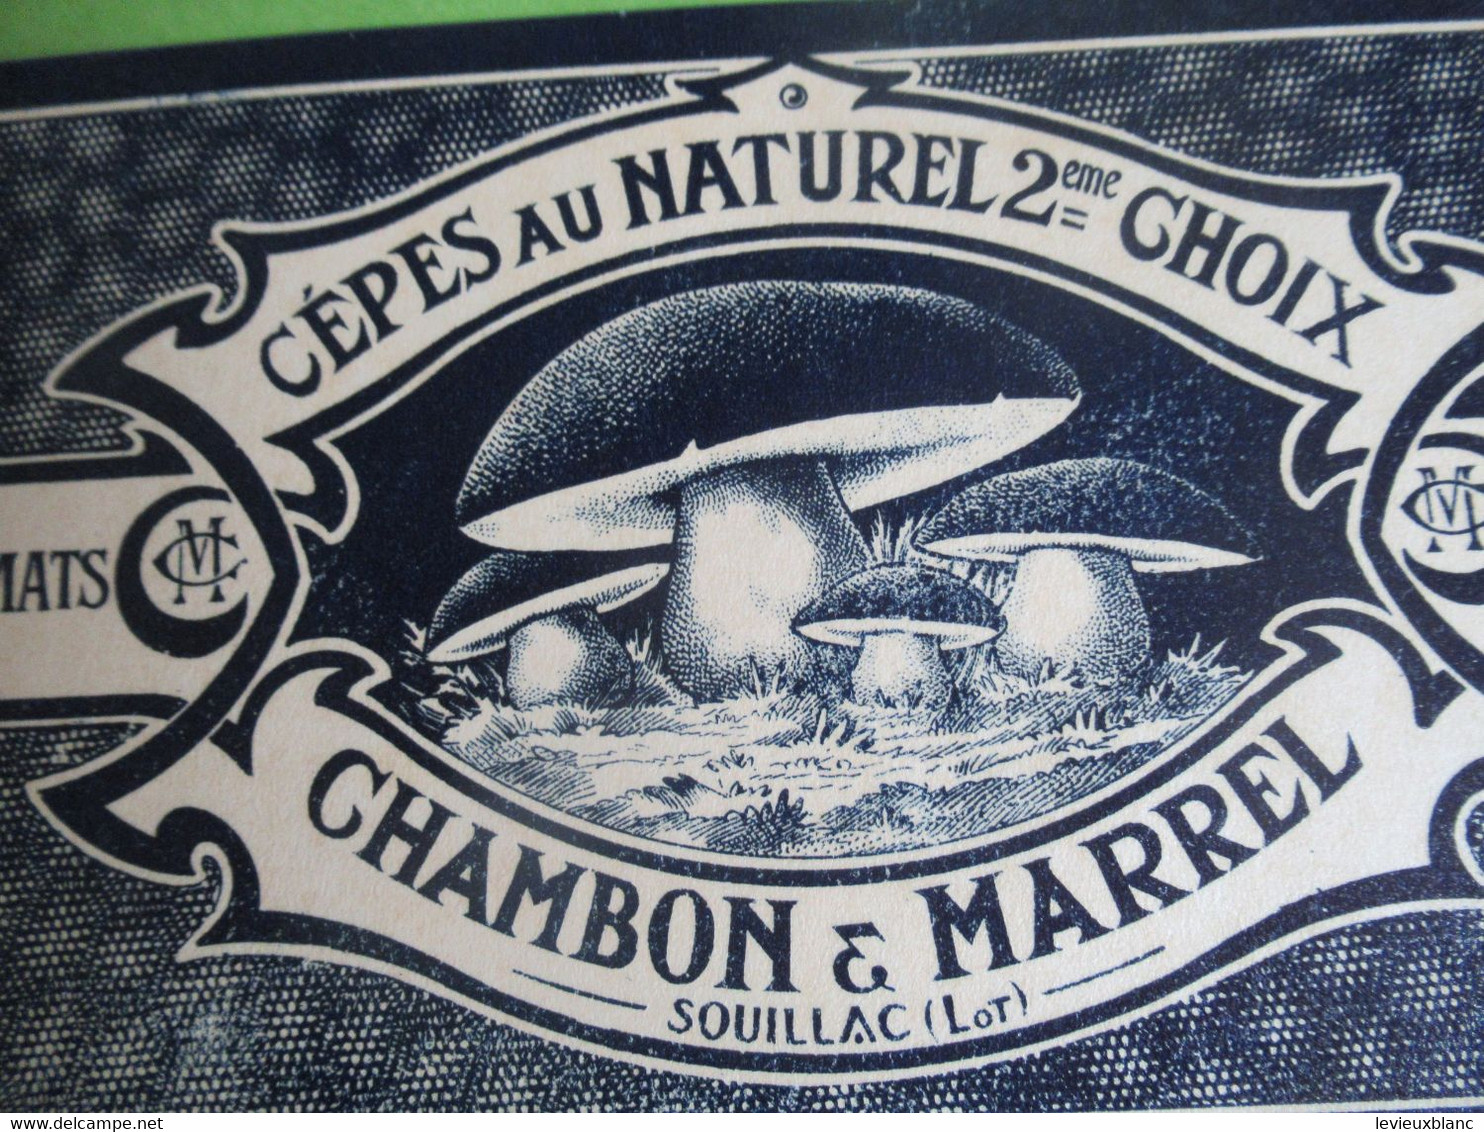 Etiquette Conserve/Cèpes Au Naturel 2éme Choix/CHAMBON & MARREL/SOUILLAC ( Lot ) /début XX                  ETIQ181 - Frutas Y Legumbres